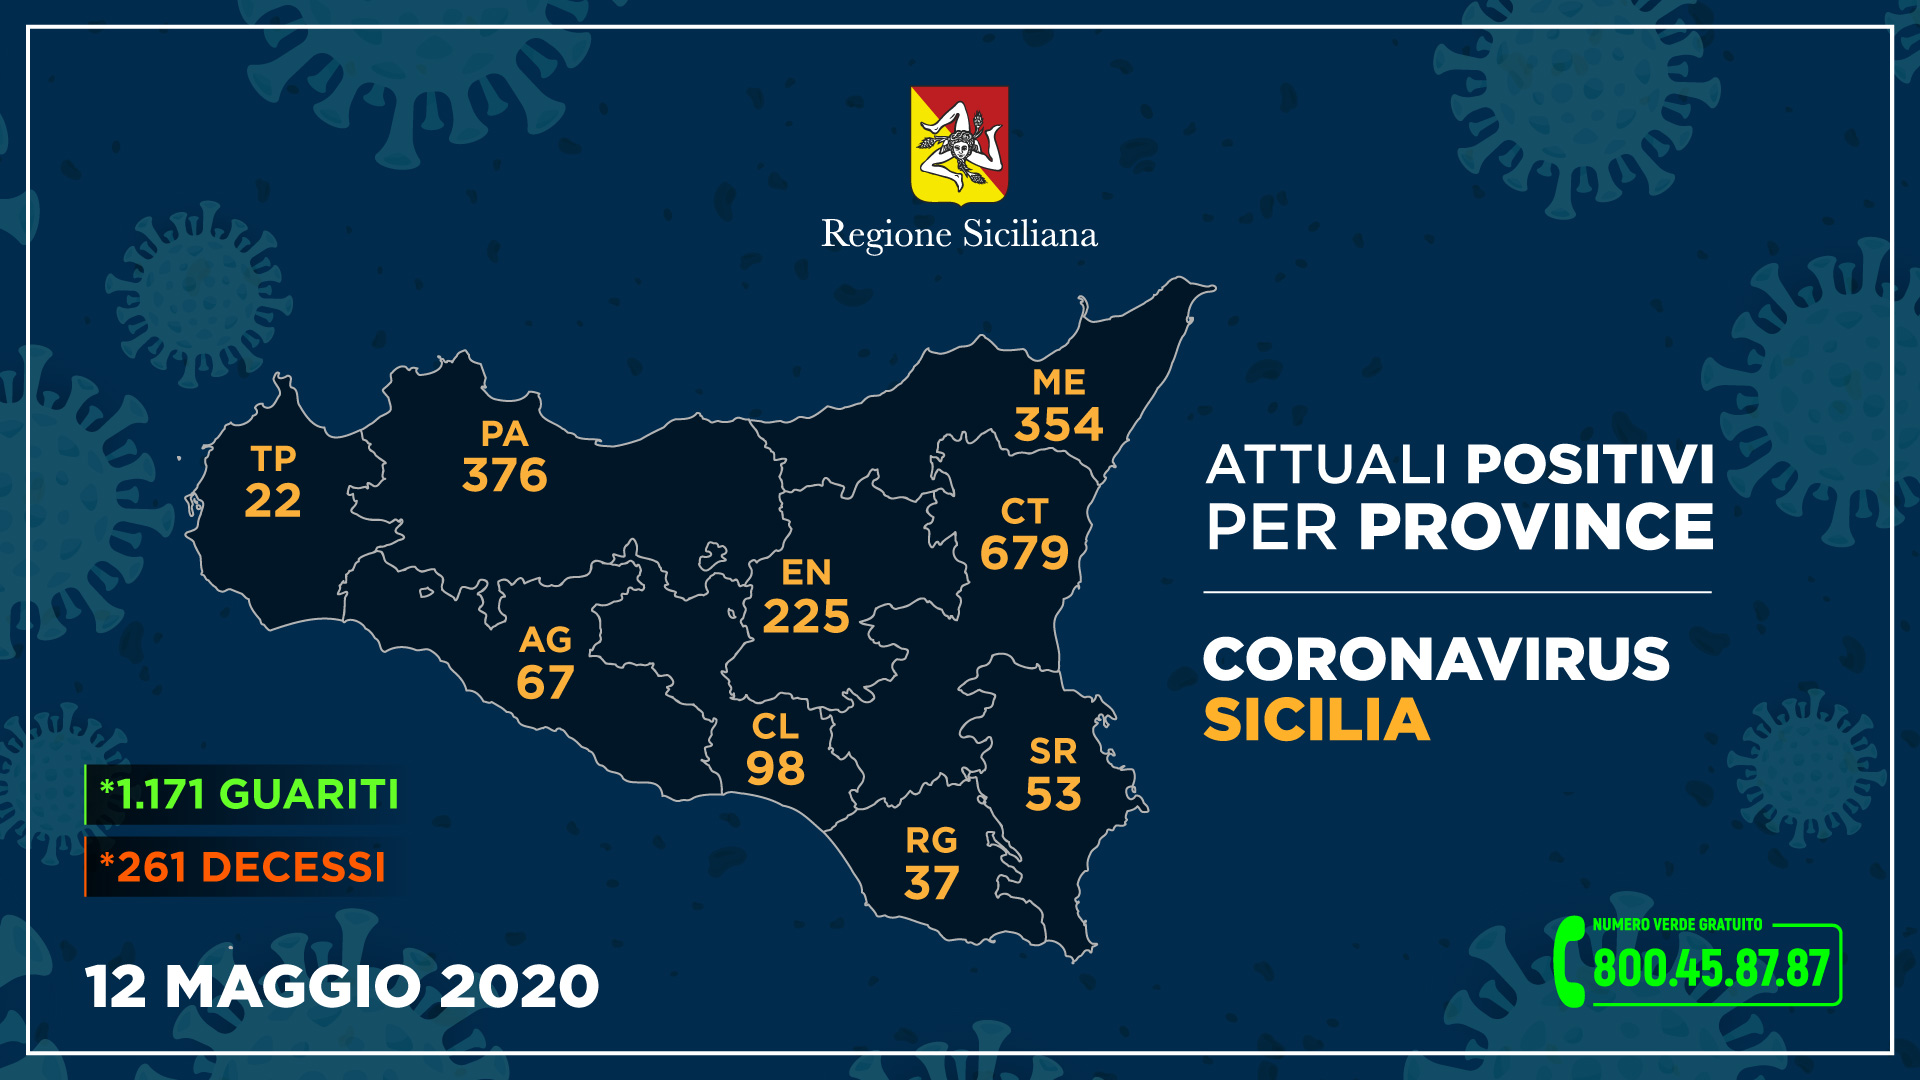 tabella dei dati sui contagi del coronavirus in sicilia e a messina aggiornati al 12 maggio 2020